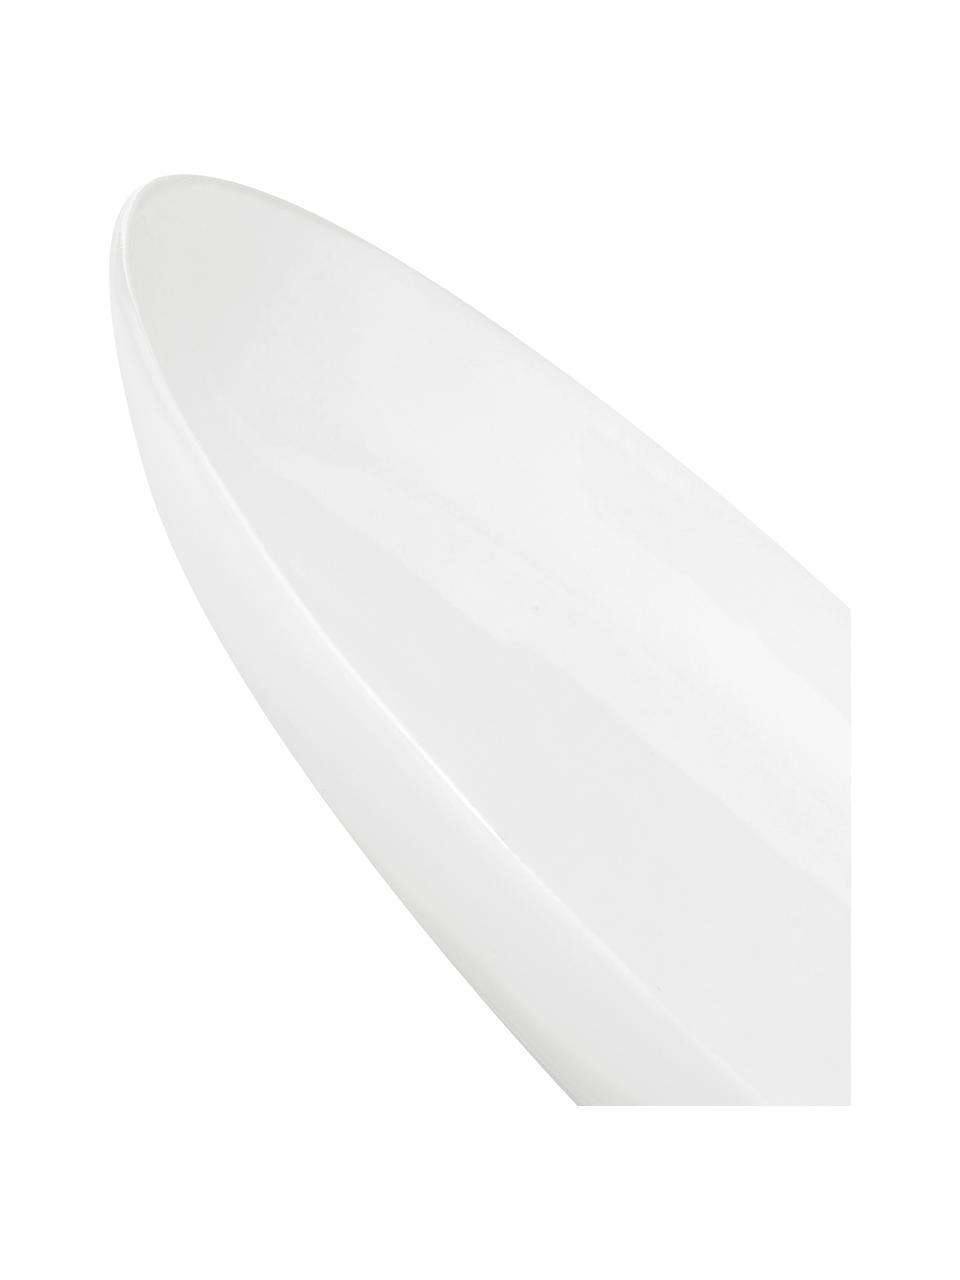 Owalny talerz duży Porcelino, 4 szt., Porcelana o celowo nierównym kształcie, Biały, D 28 x S 24 cm